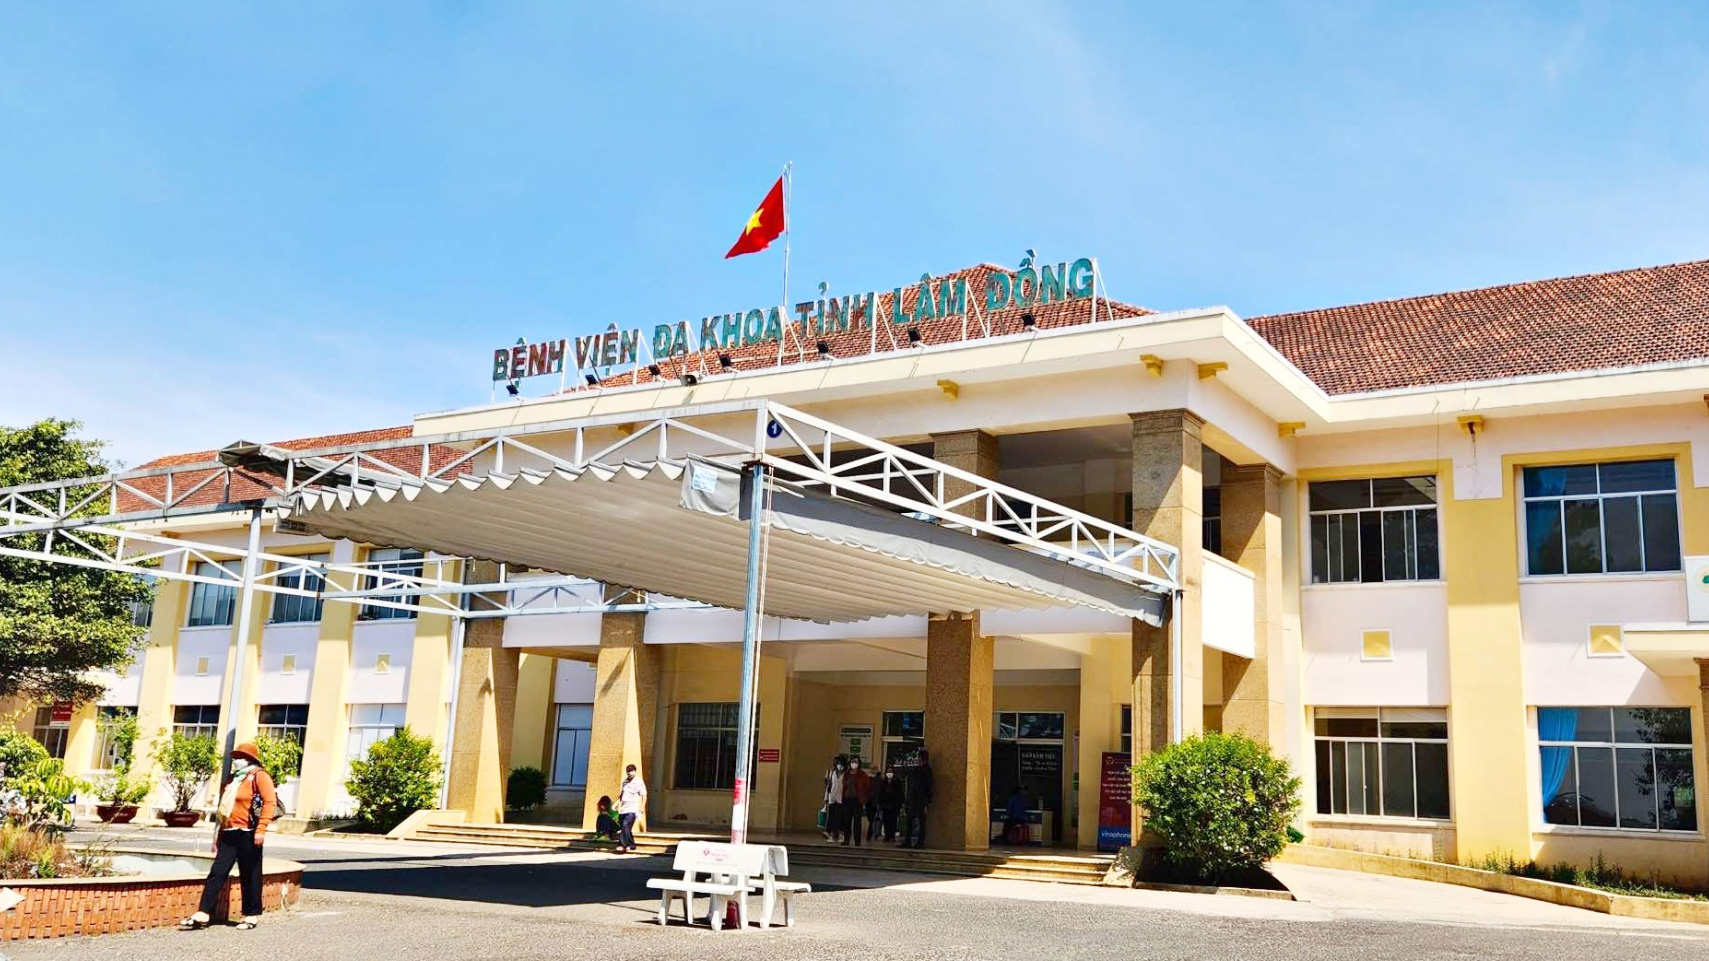 Vụ nhầm lẫn phim chụp X-Quang: Đại diện bệnh viện đến nhà xin lỗi bệnh nhân